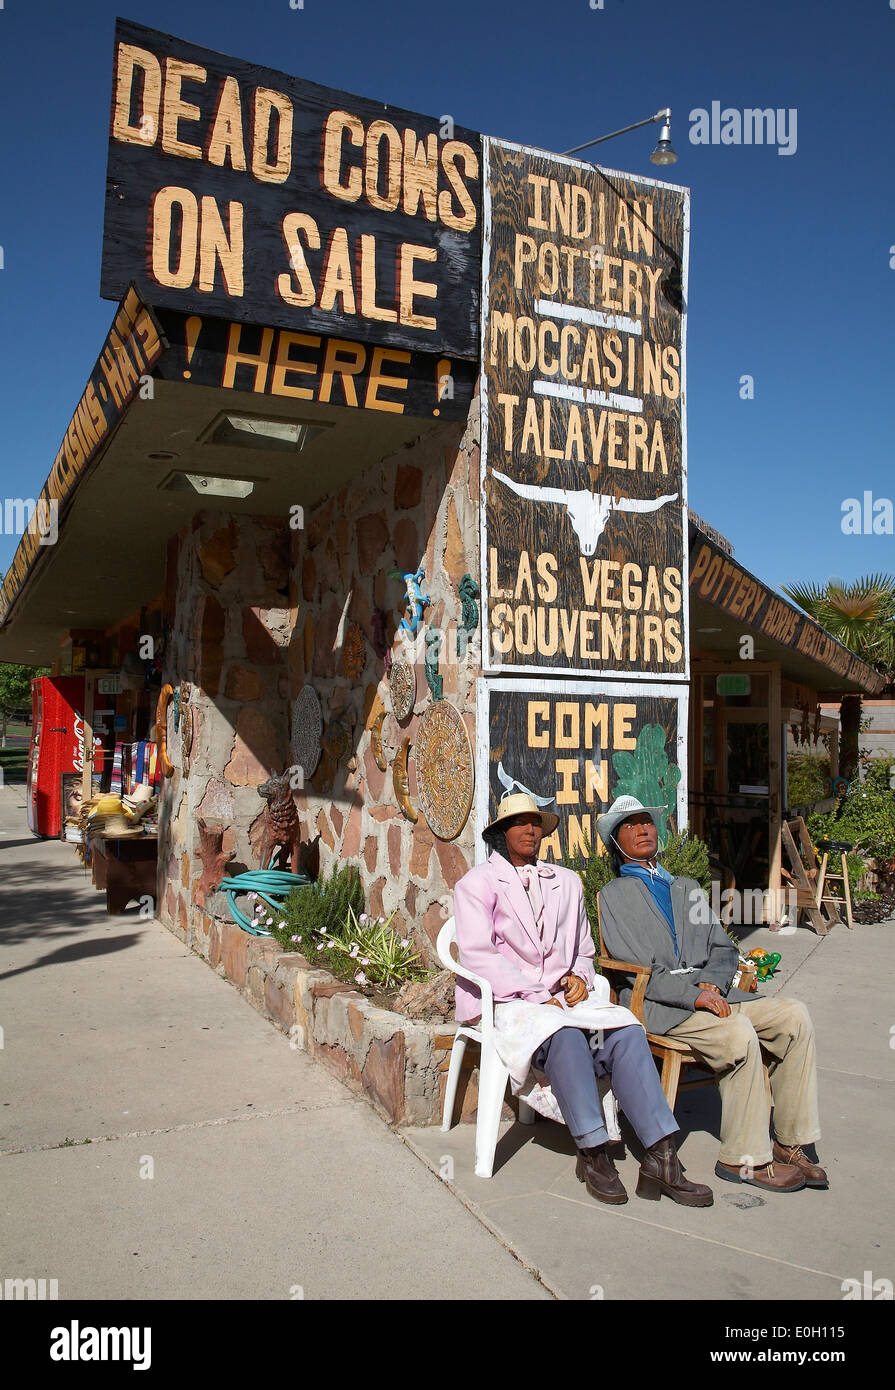 Western centro messicano, un negozio di souvenir nella storica città di Boulder, Nevada, STATI UNITI D'AMERICA Foto Stock